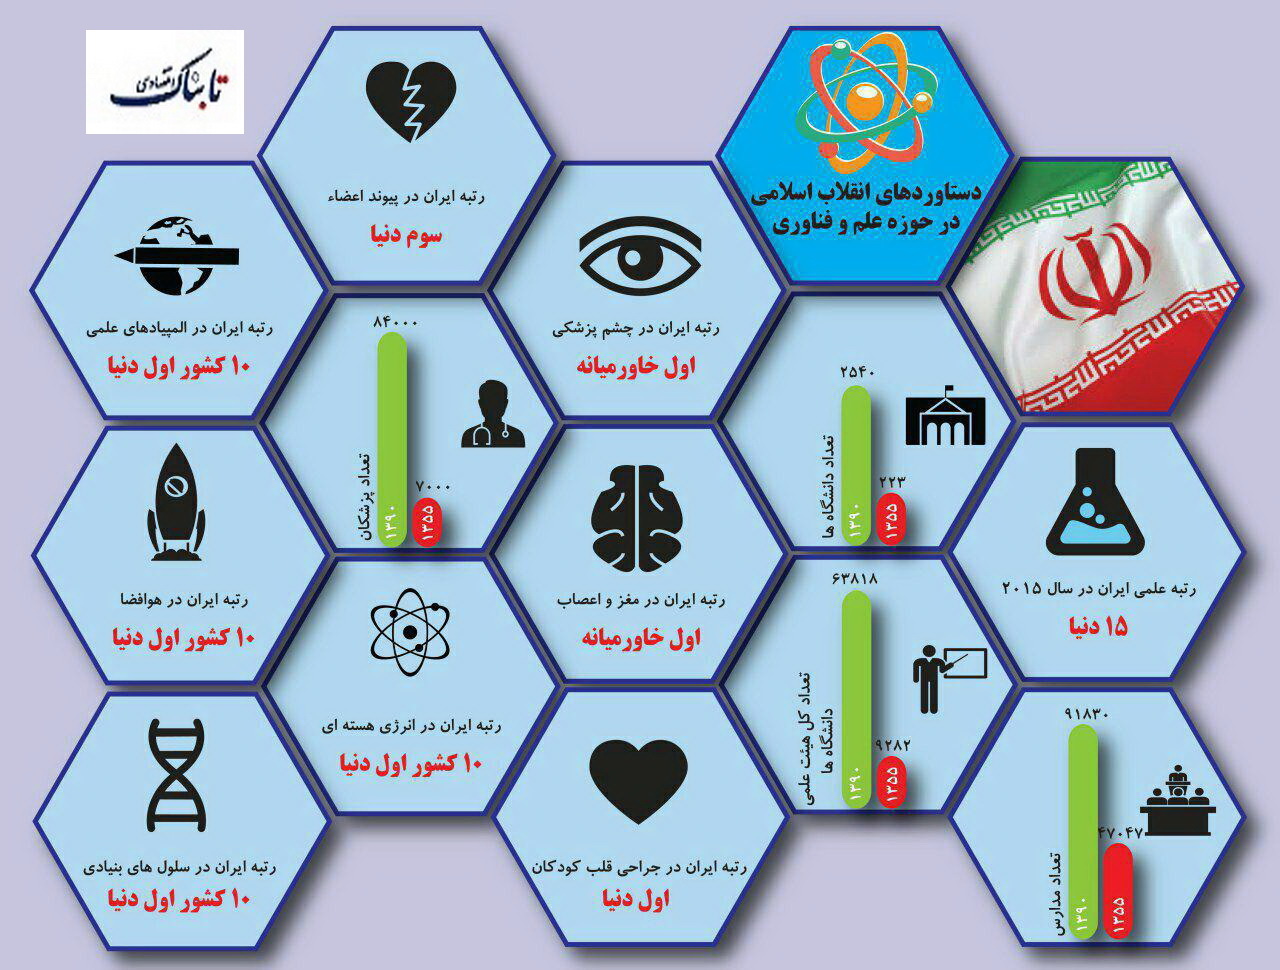 اينفوگرافی دستاوردهای انقلاب اسلامی در حوزه علم و فناوری